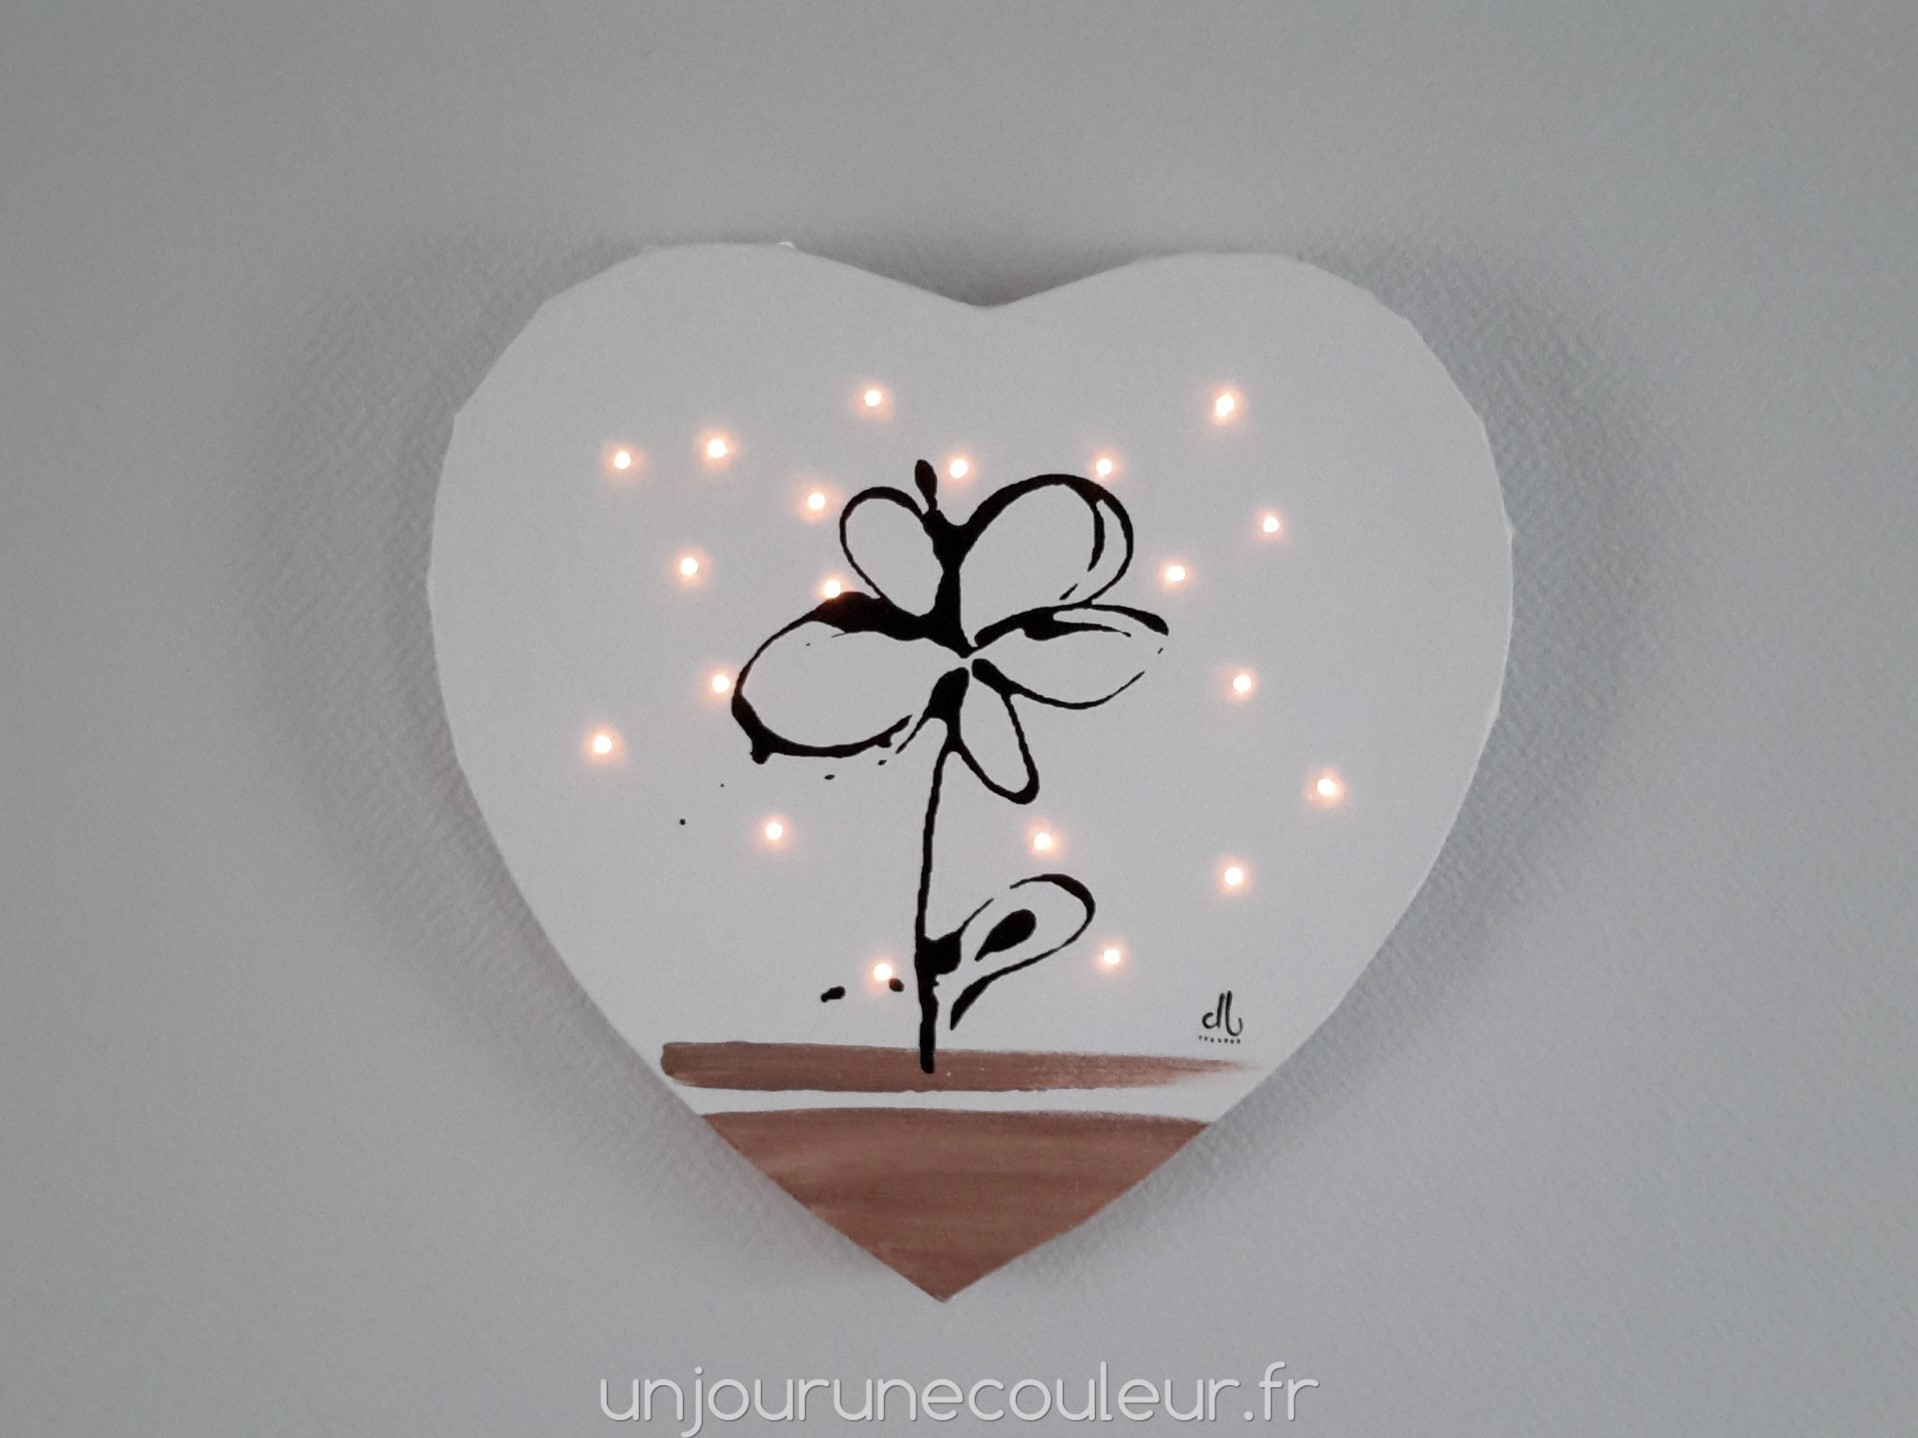 Tableau lumineux en forme de coeur : fleur noire sur fond blanc